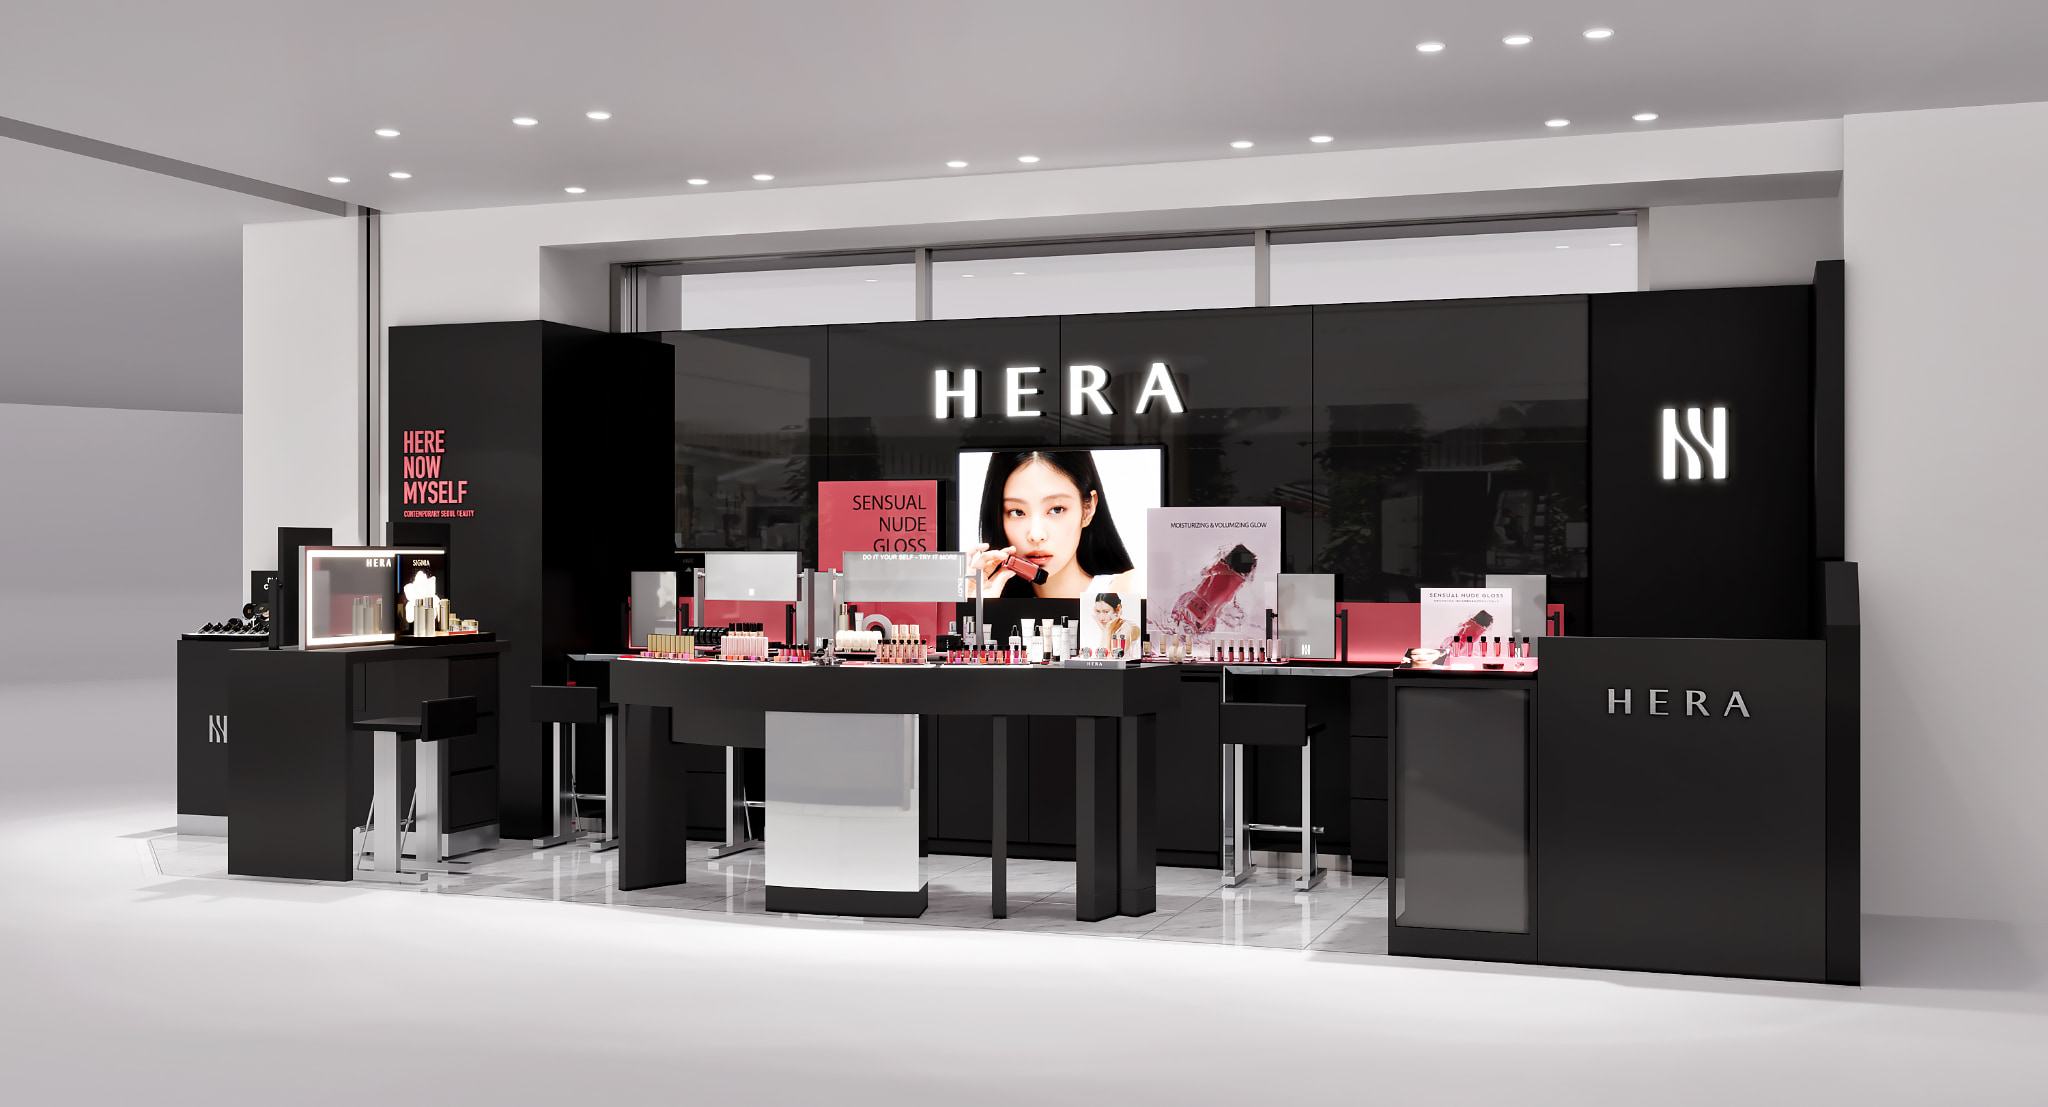 韓国・ソウル発のラグジュアリーメイクアップブランド「HERA」明日7月8日(月)から松屋銀座で長期ポップアップストアを展開